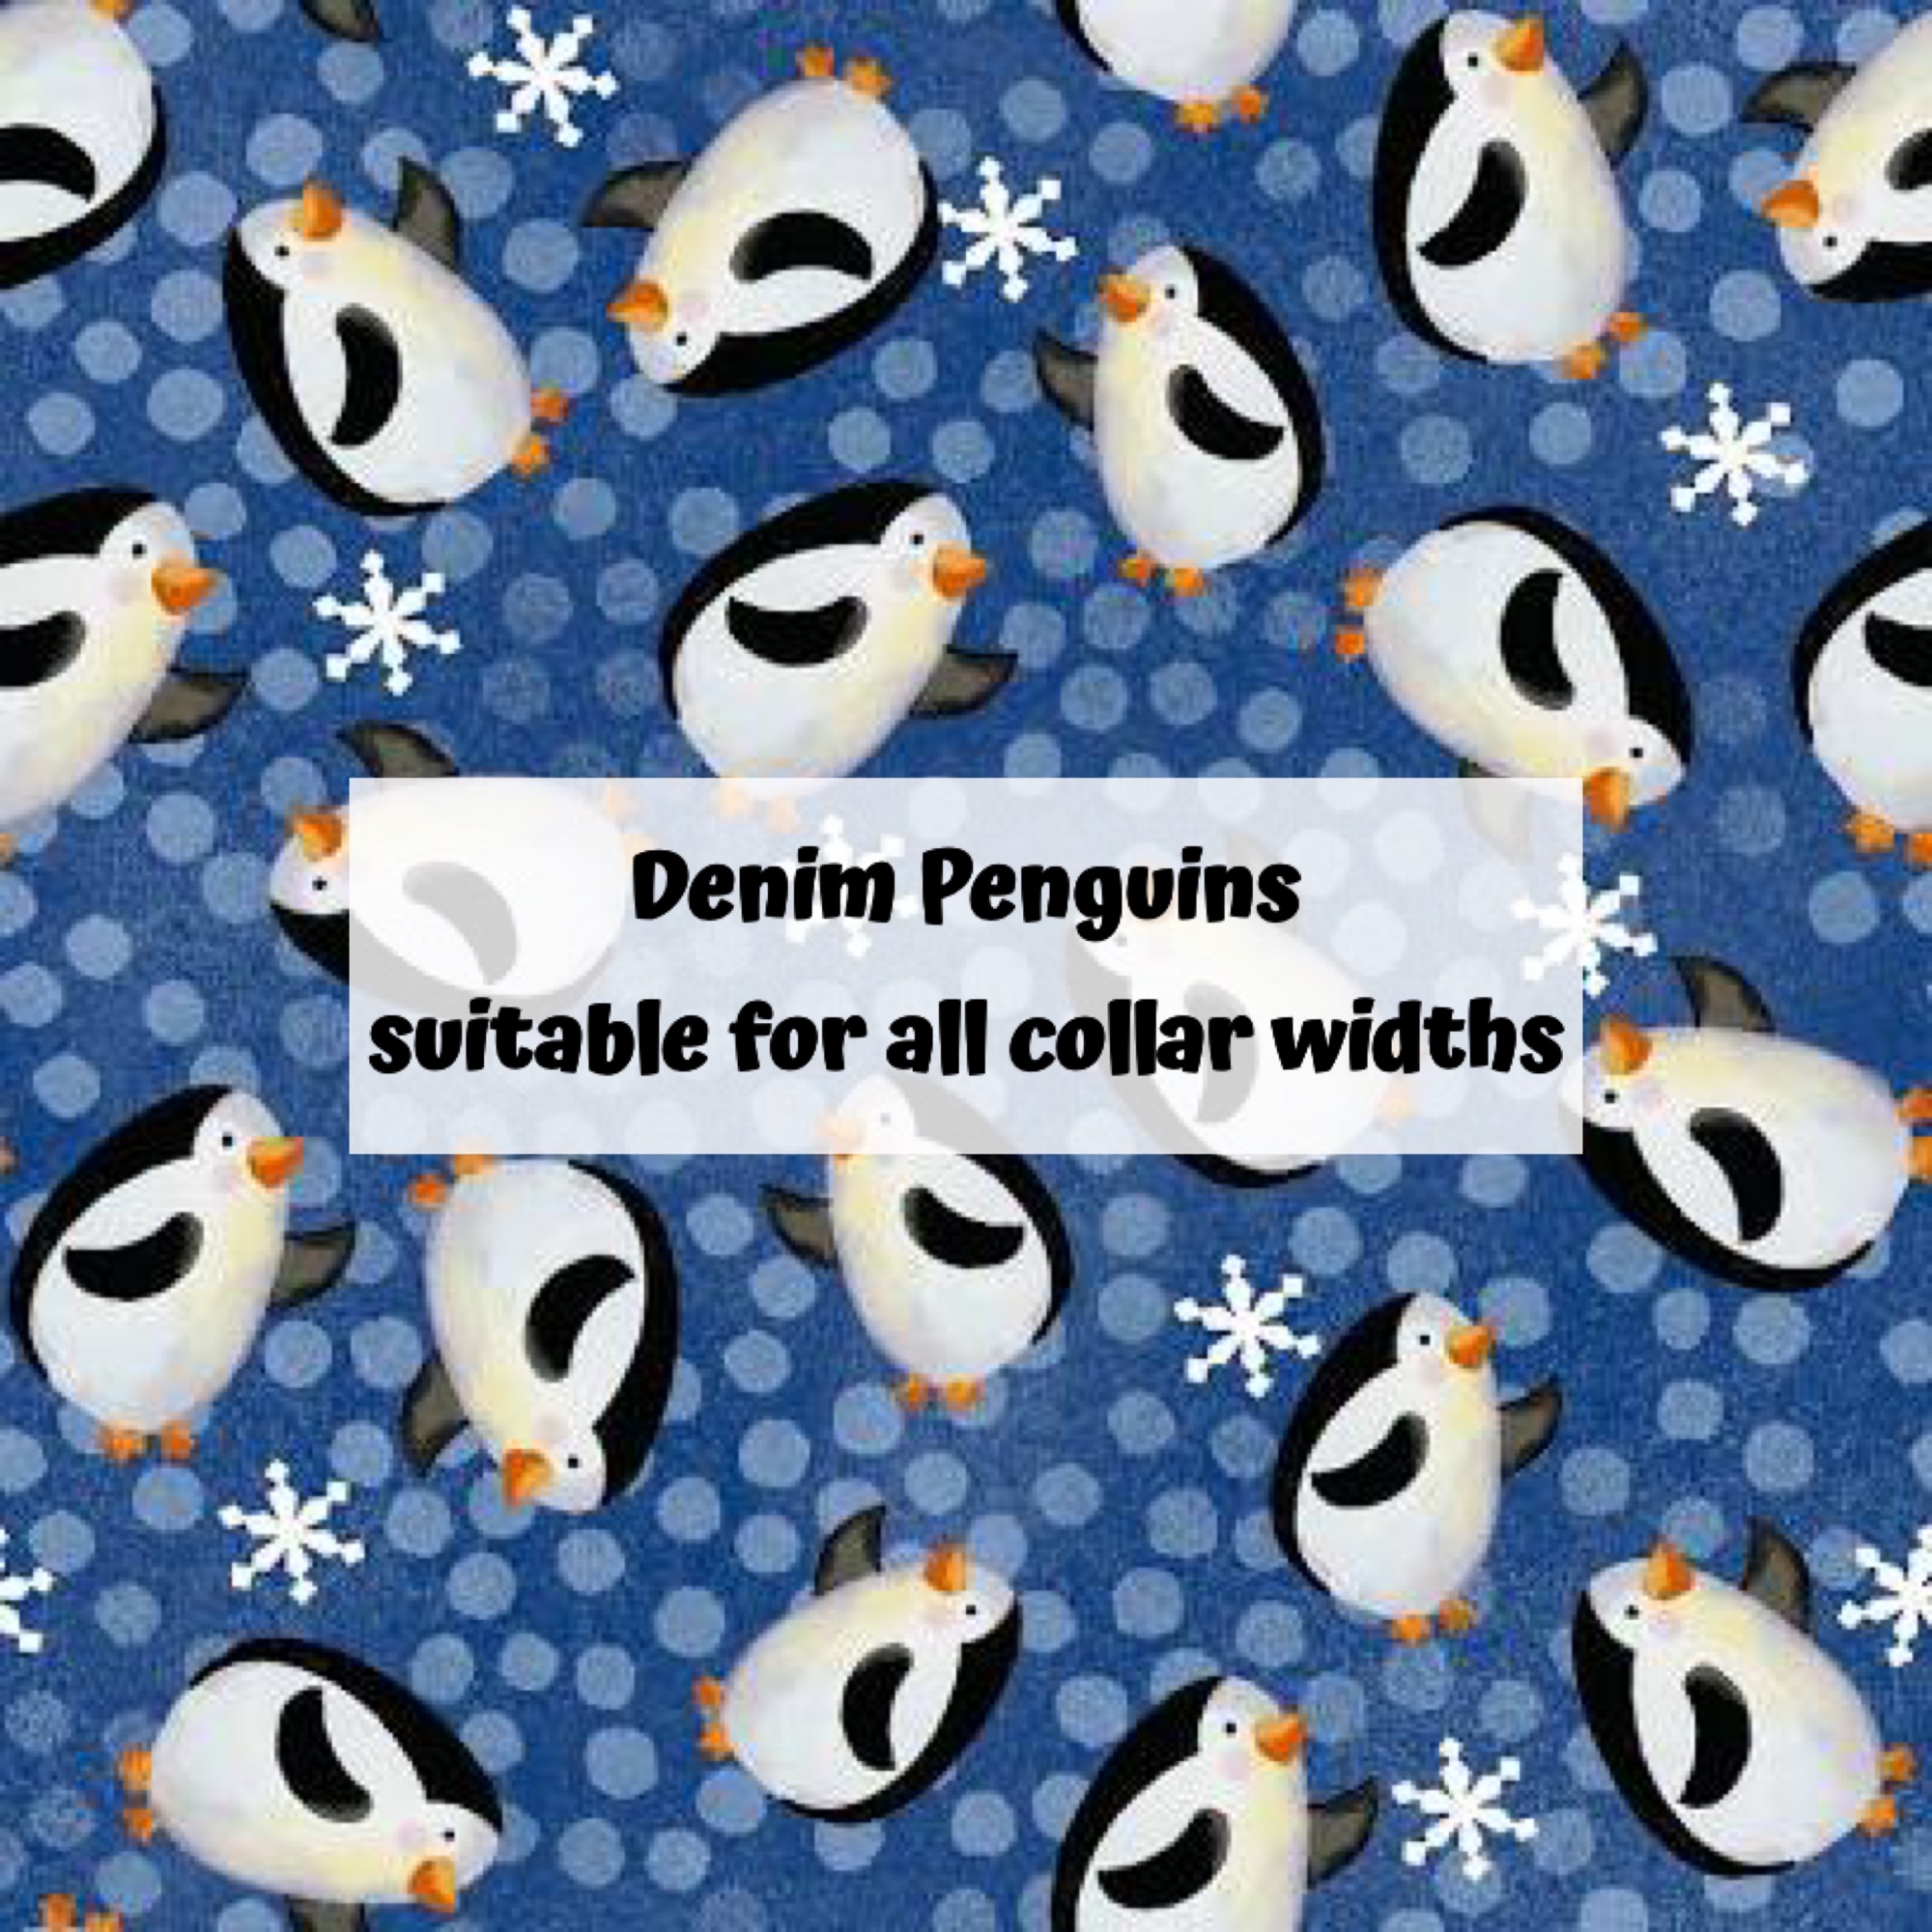 Denim Penguins